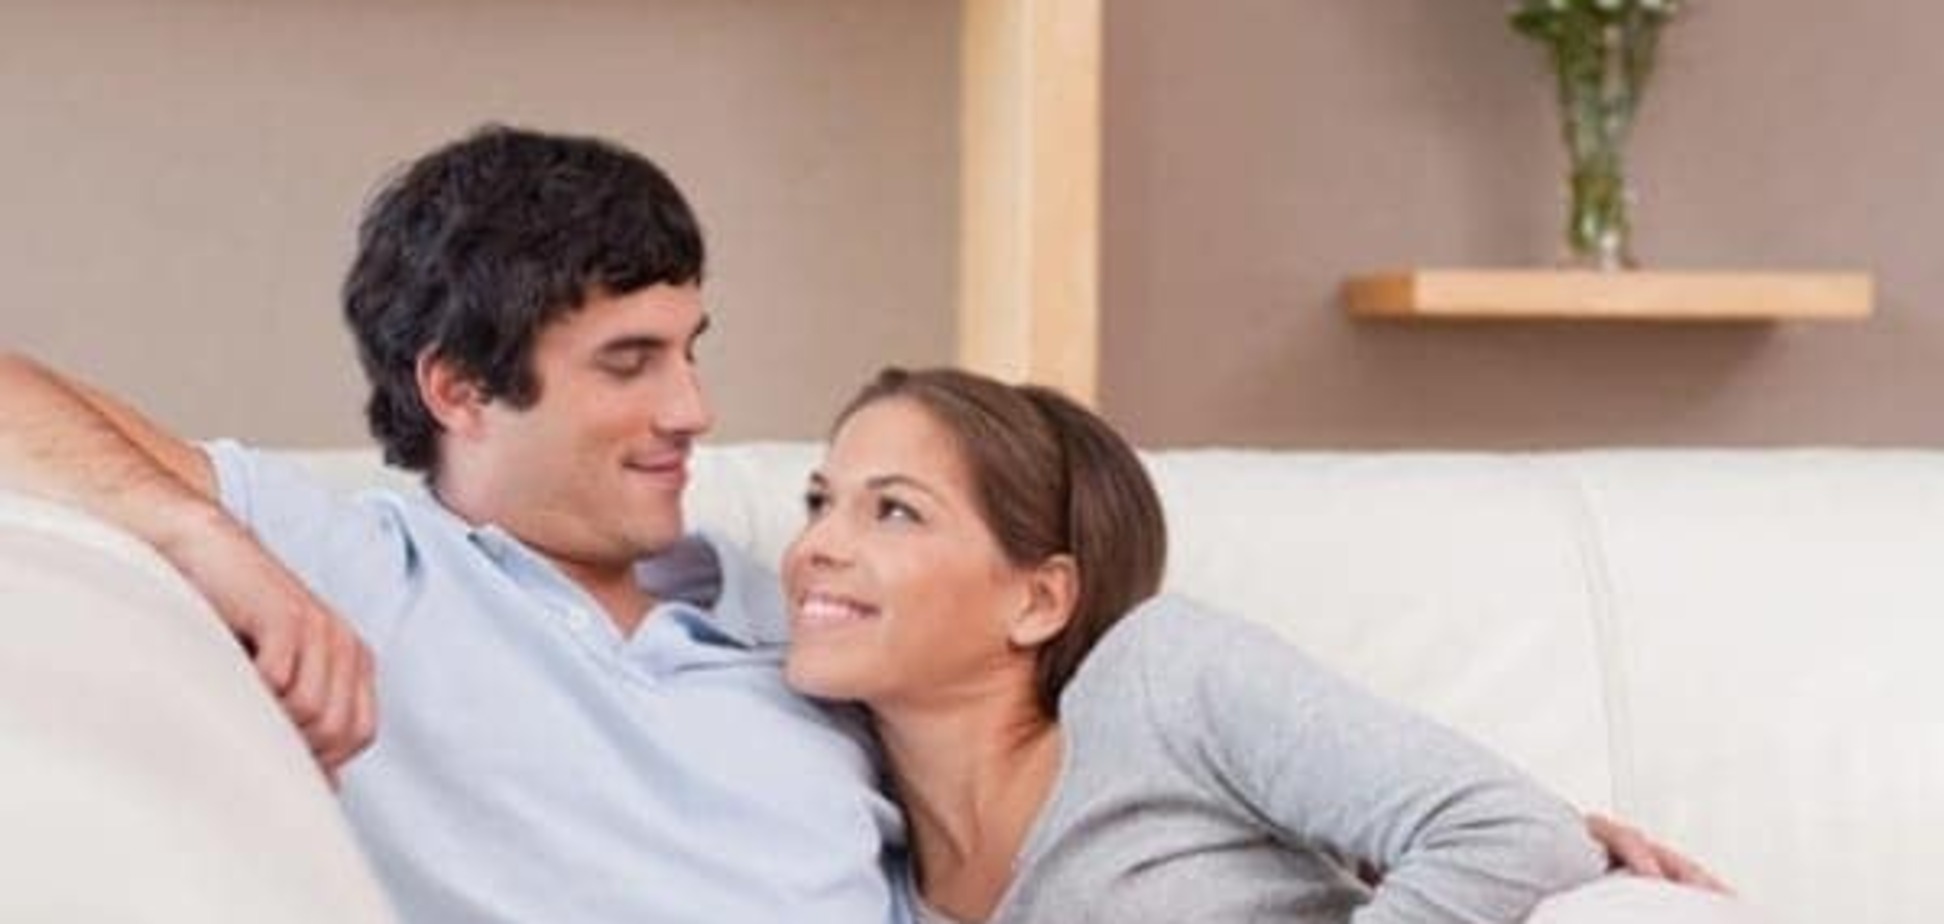 Міцний шлюб: 10 простих секретів